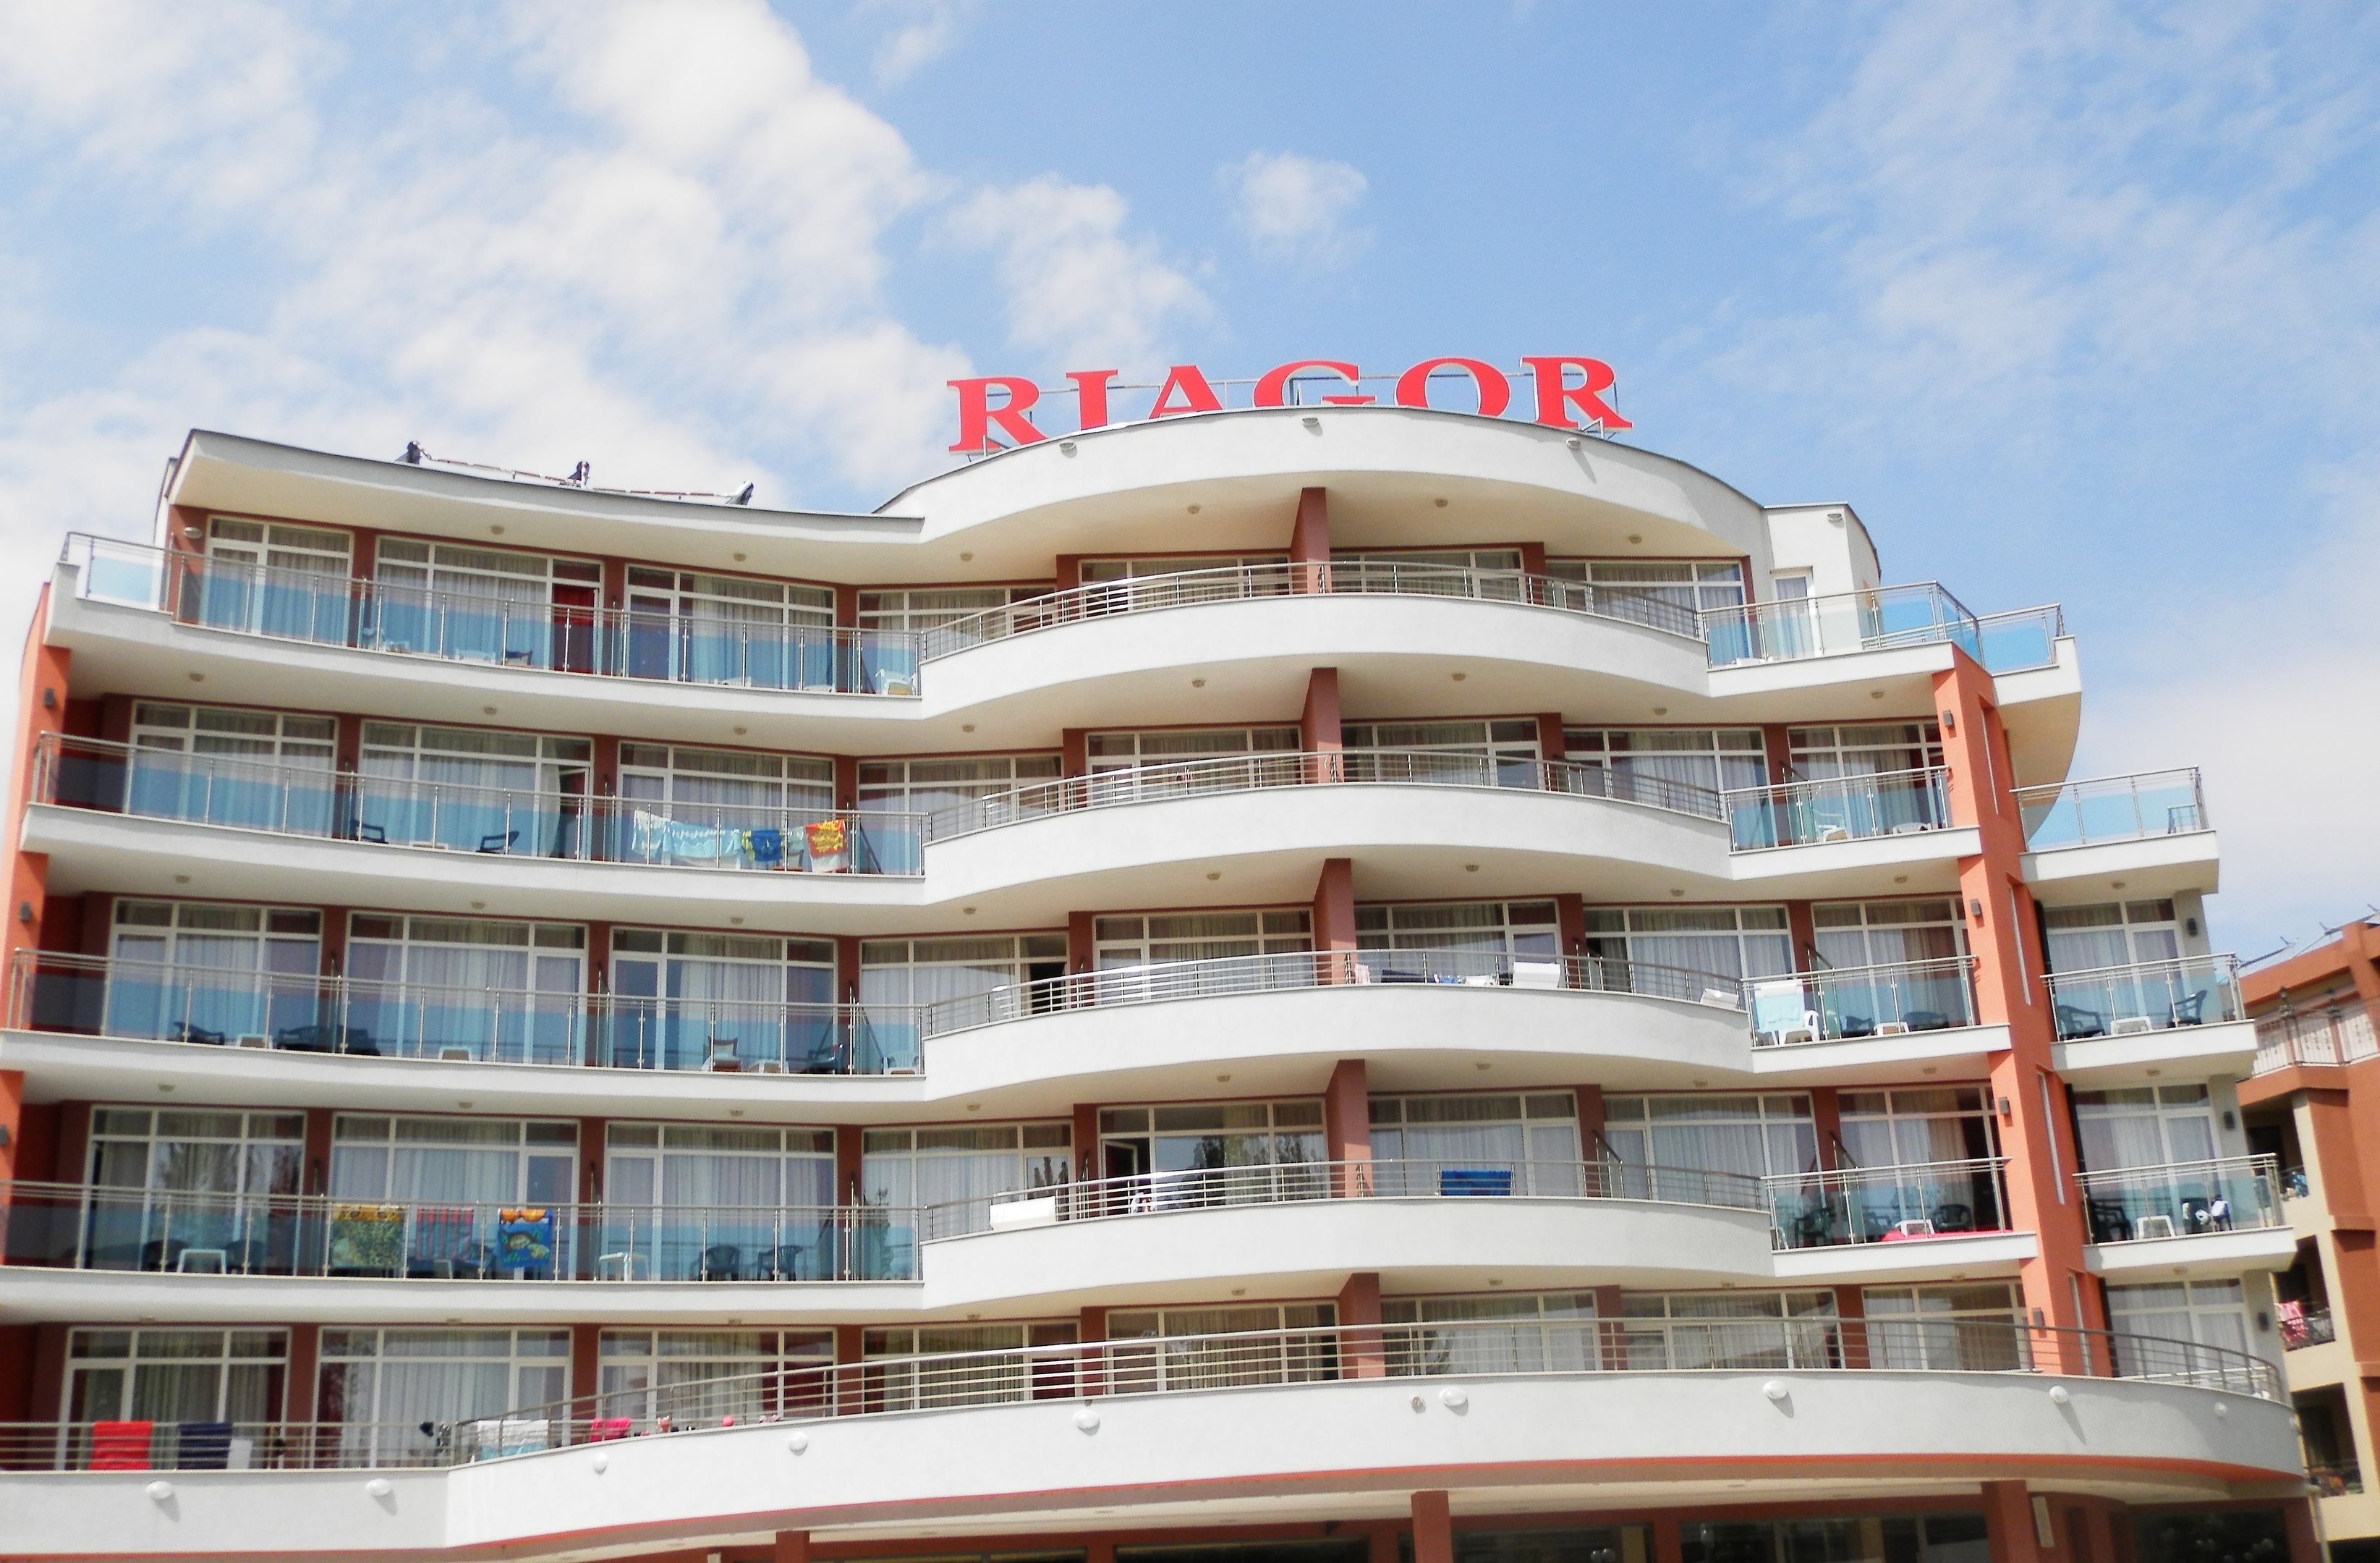 HOTEL RIAGOR